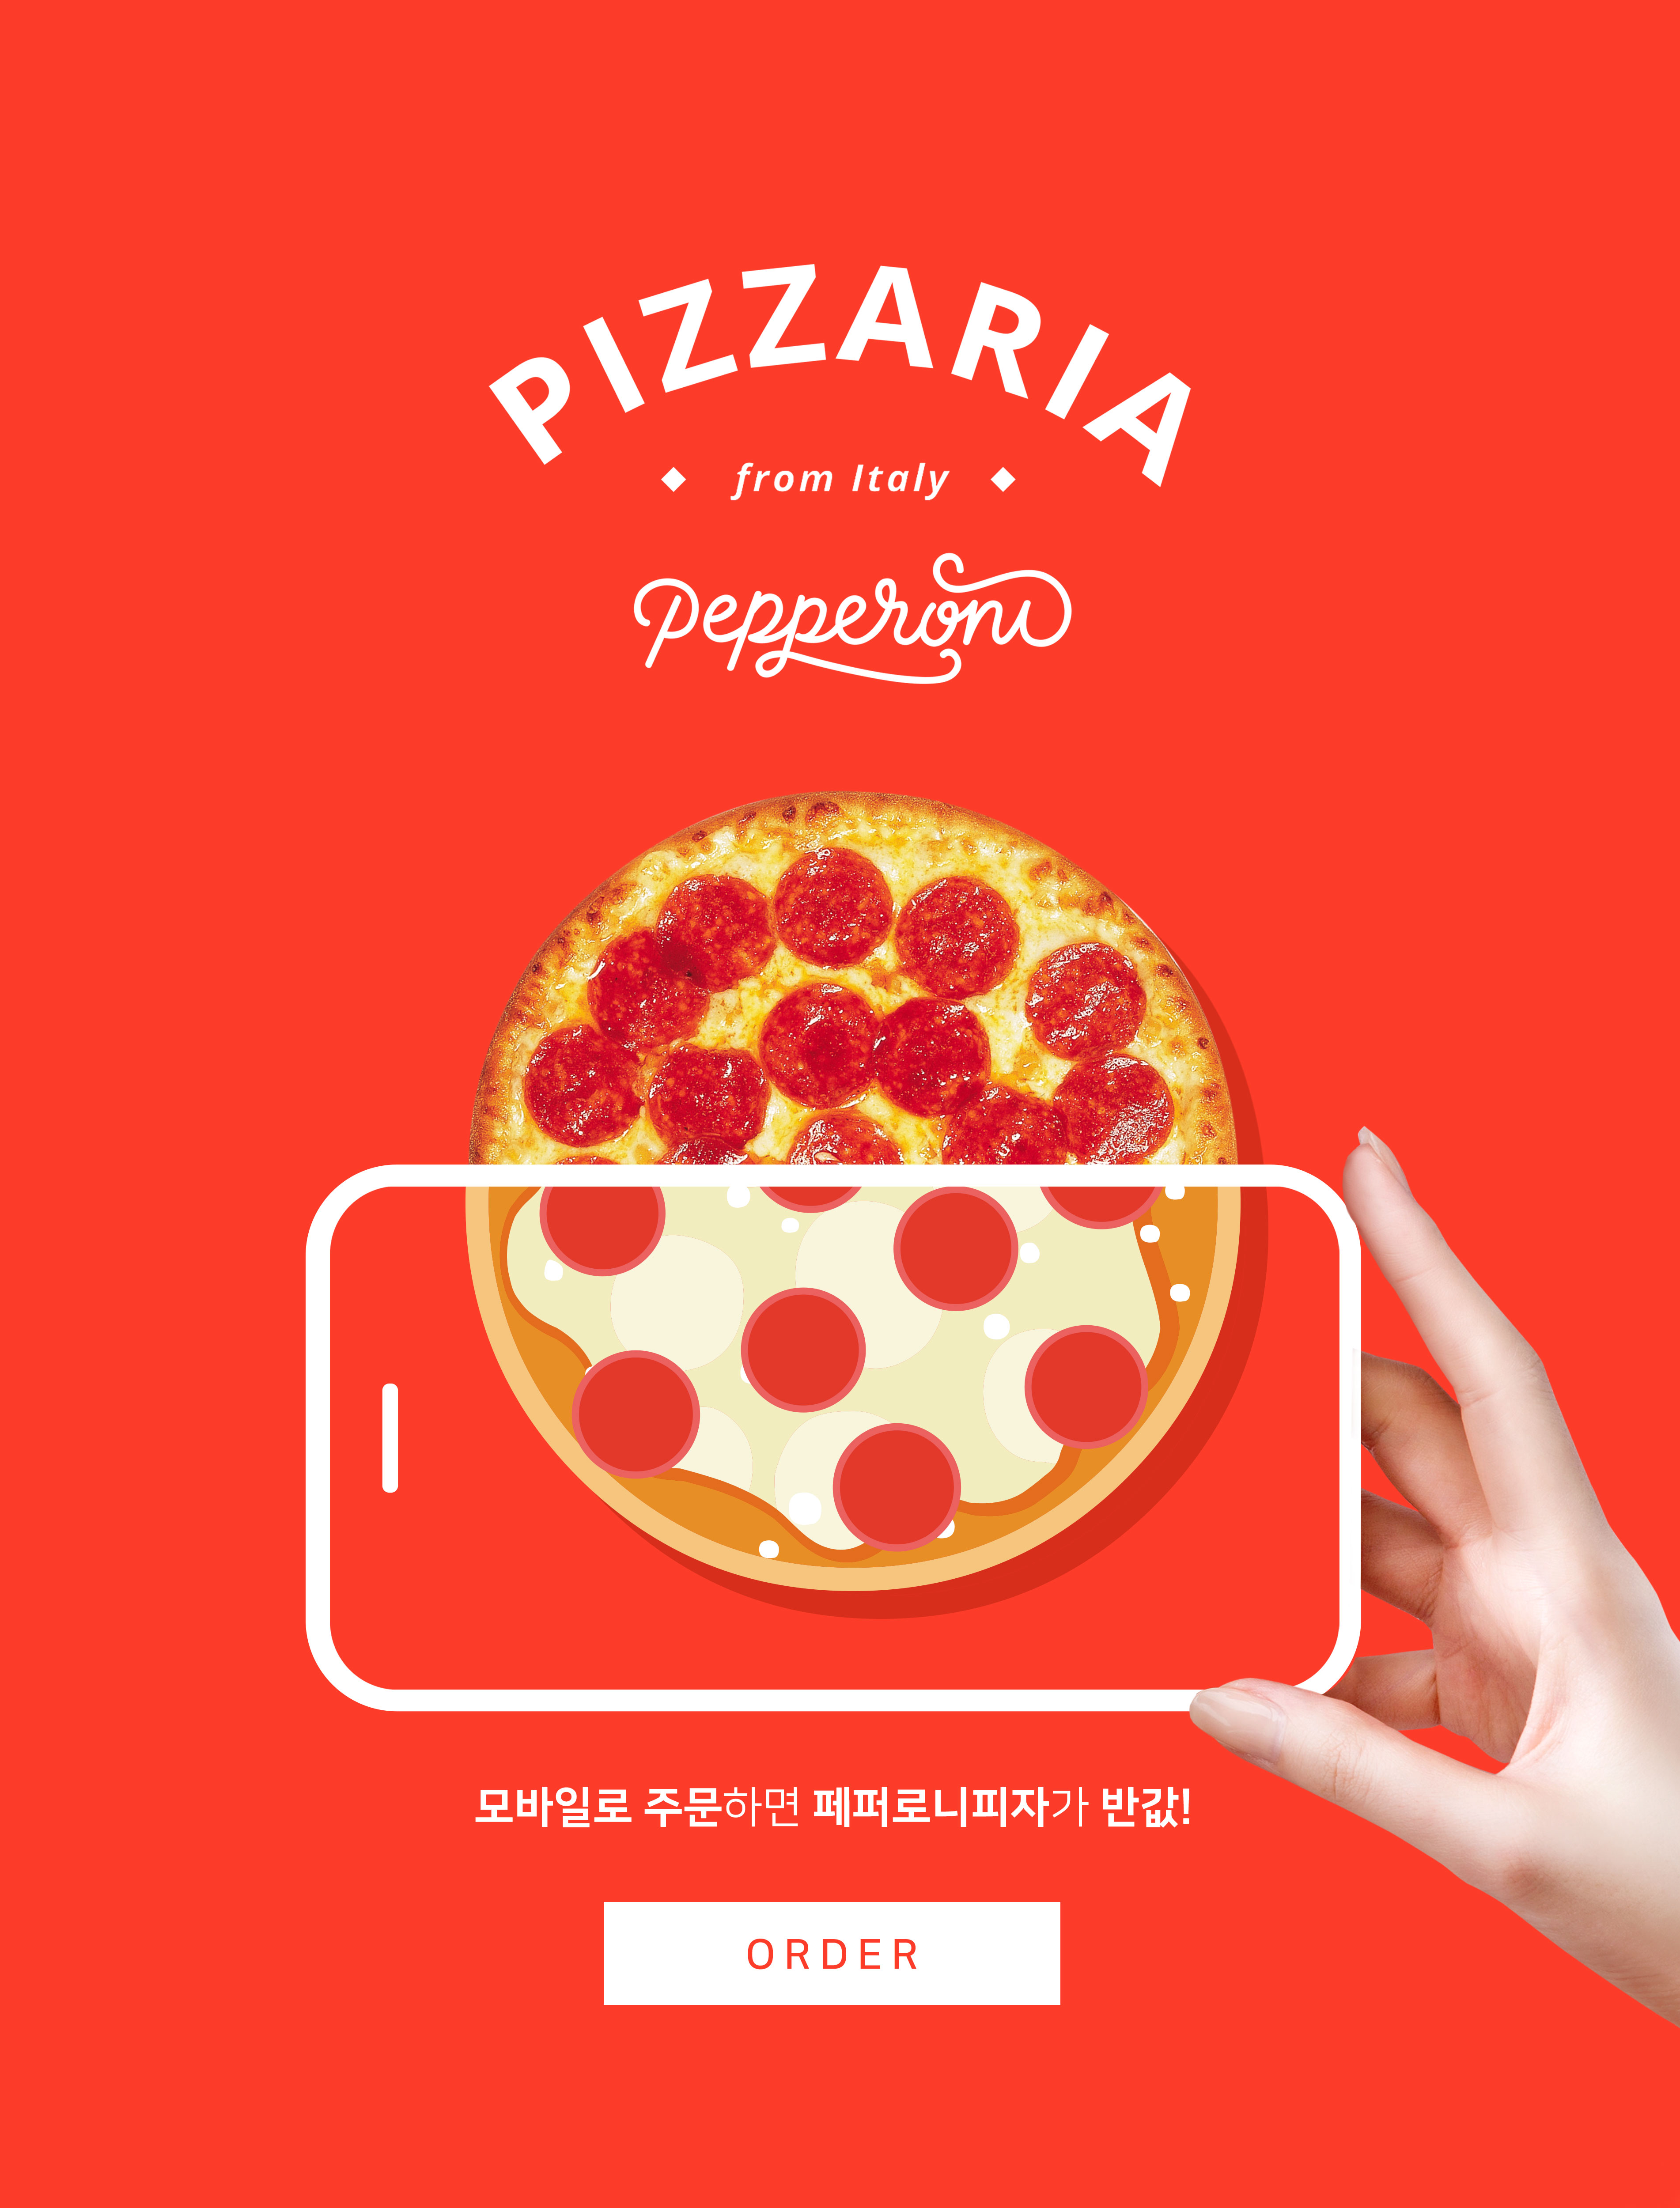 手机订购披萨半价活动宣传海报PSD素材蚂蚁素材精选素材插图